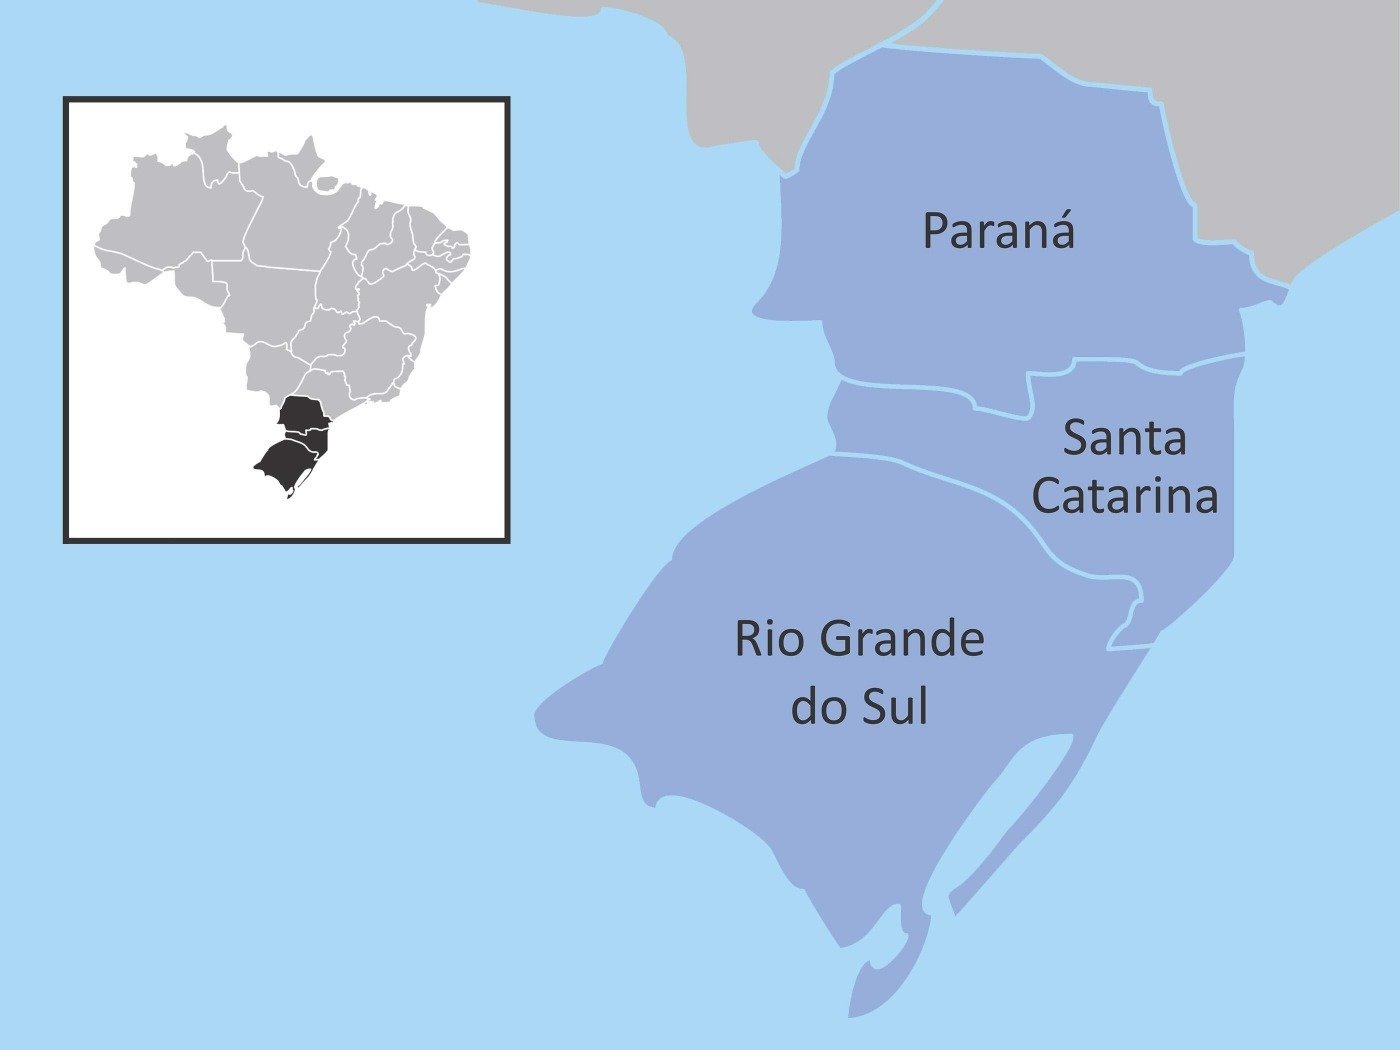 Região sul do Brasil: a história, os estados e as principais  características - Toda Matéria